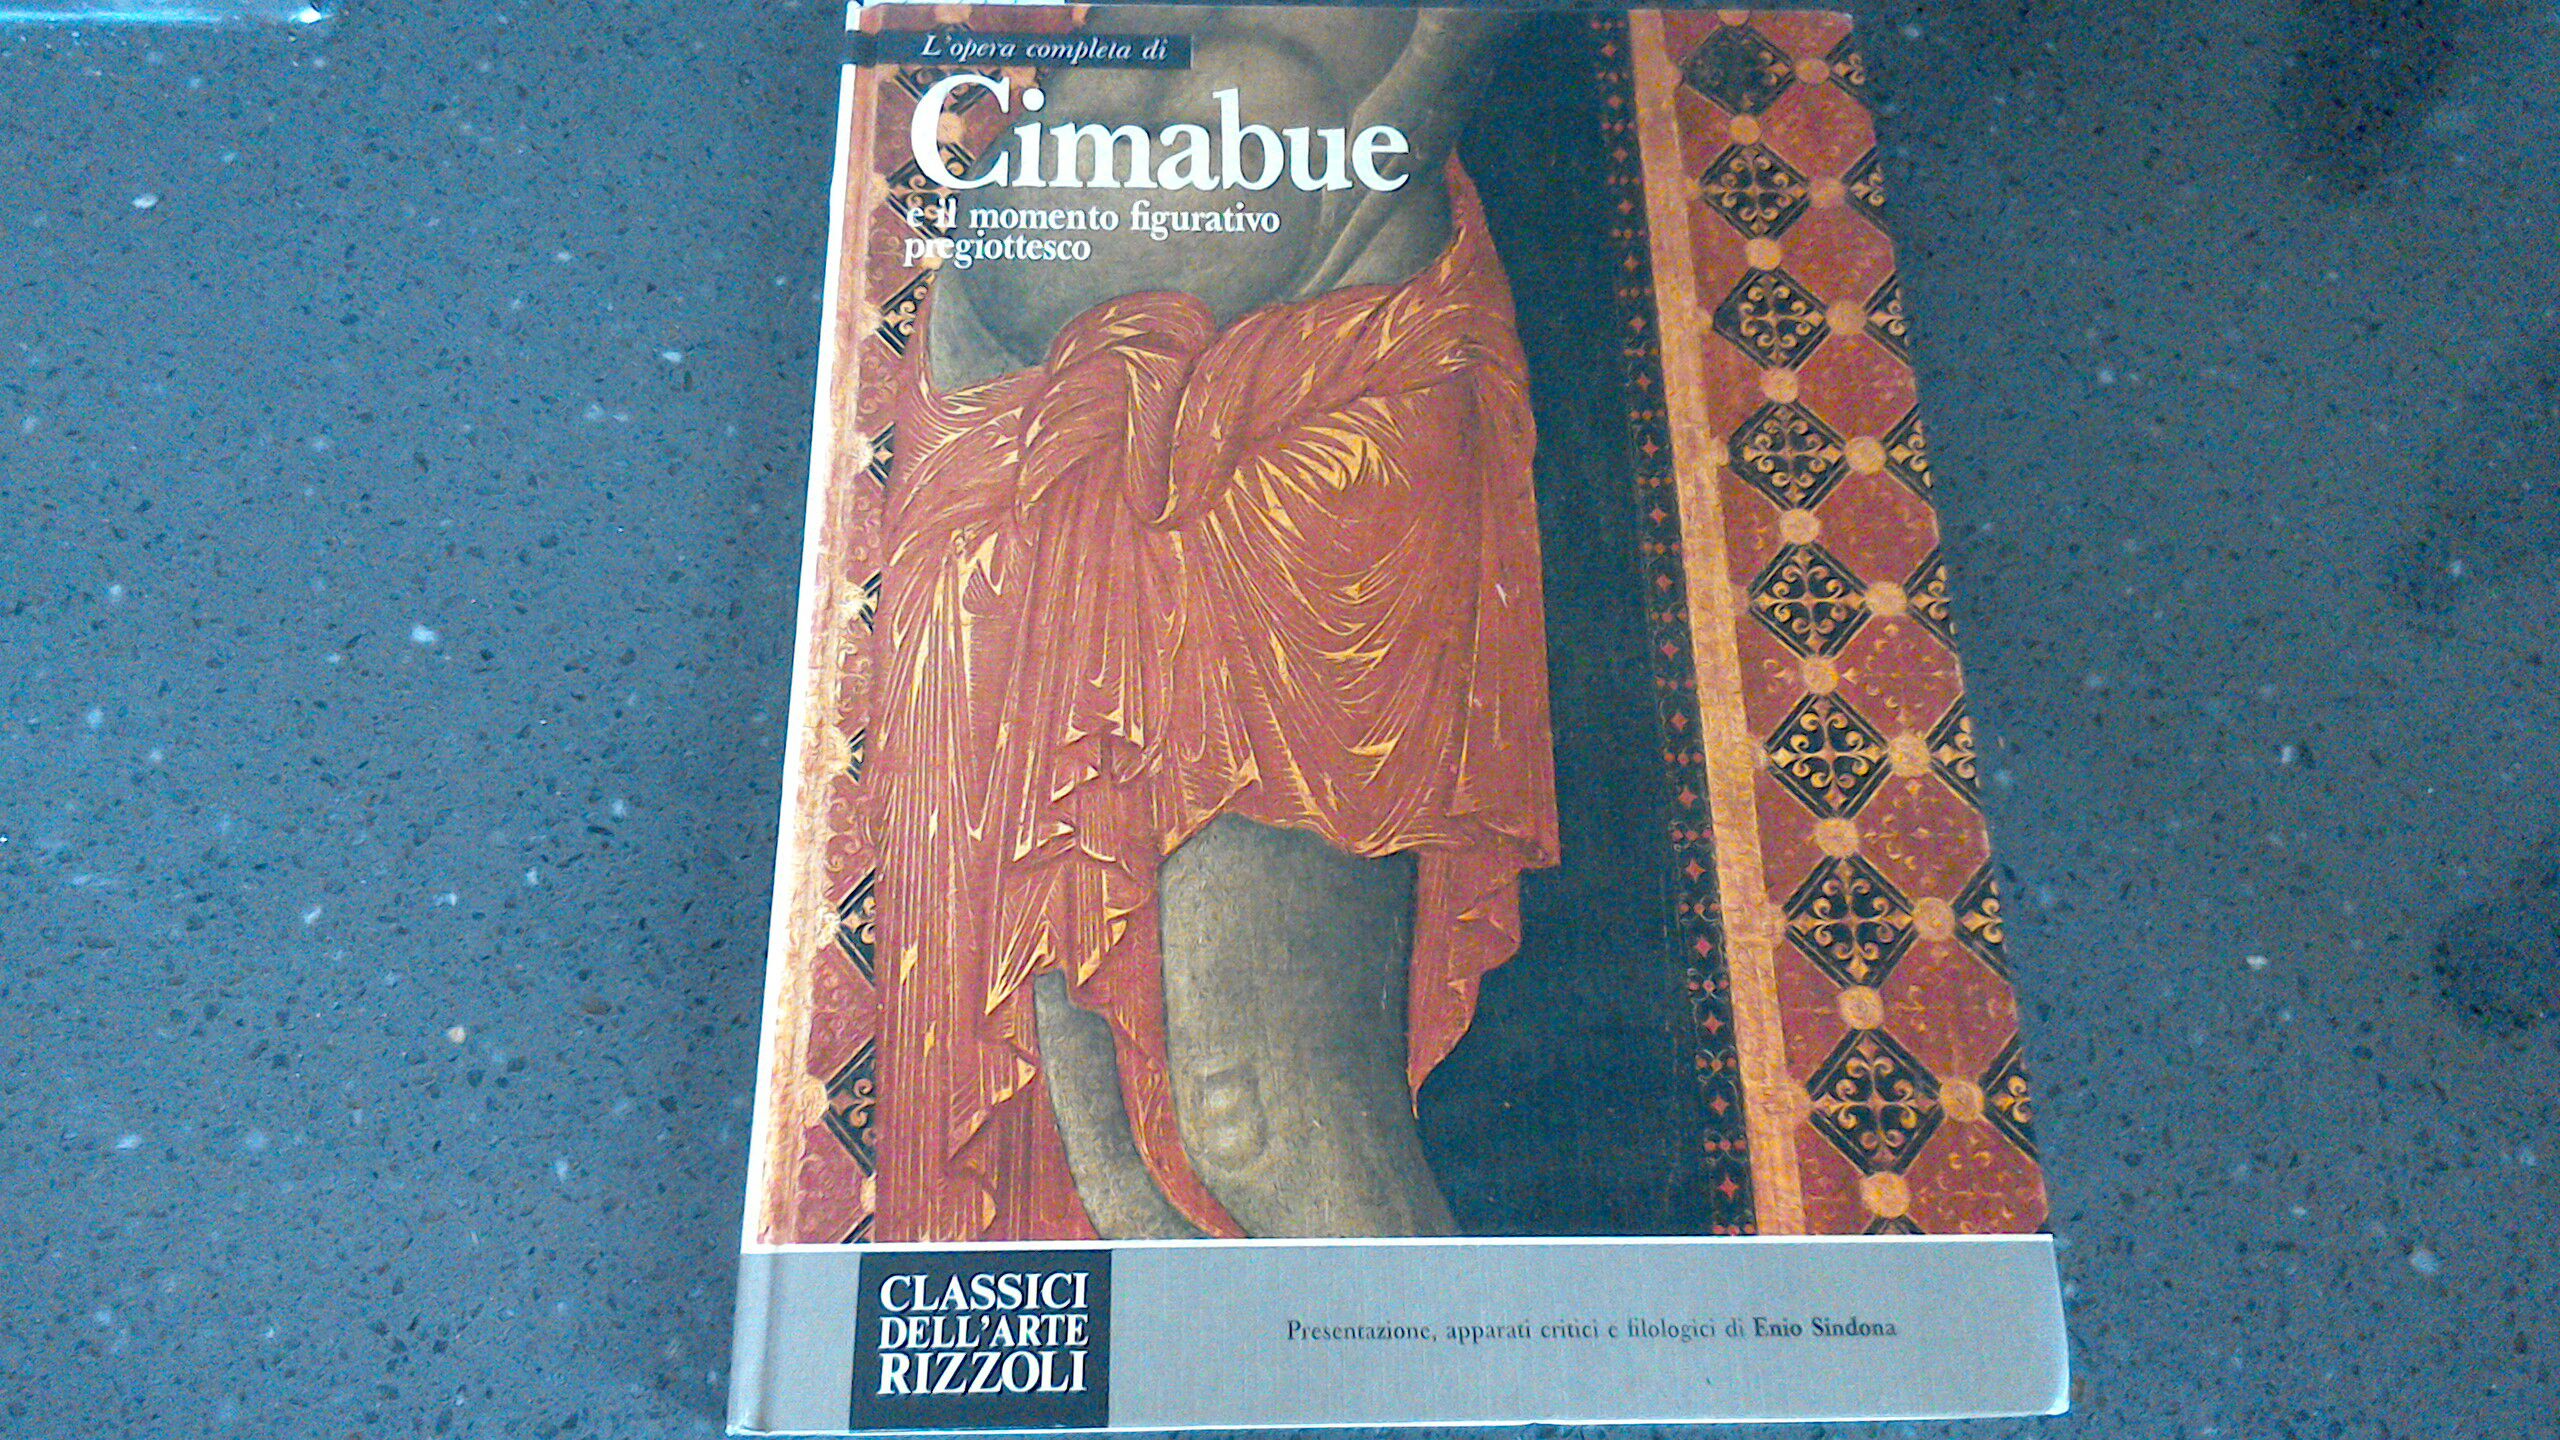 L'opera completa di Cimabue e il momento figurativo pregiottesco